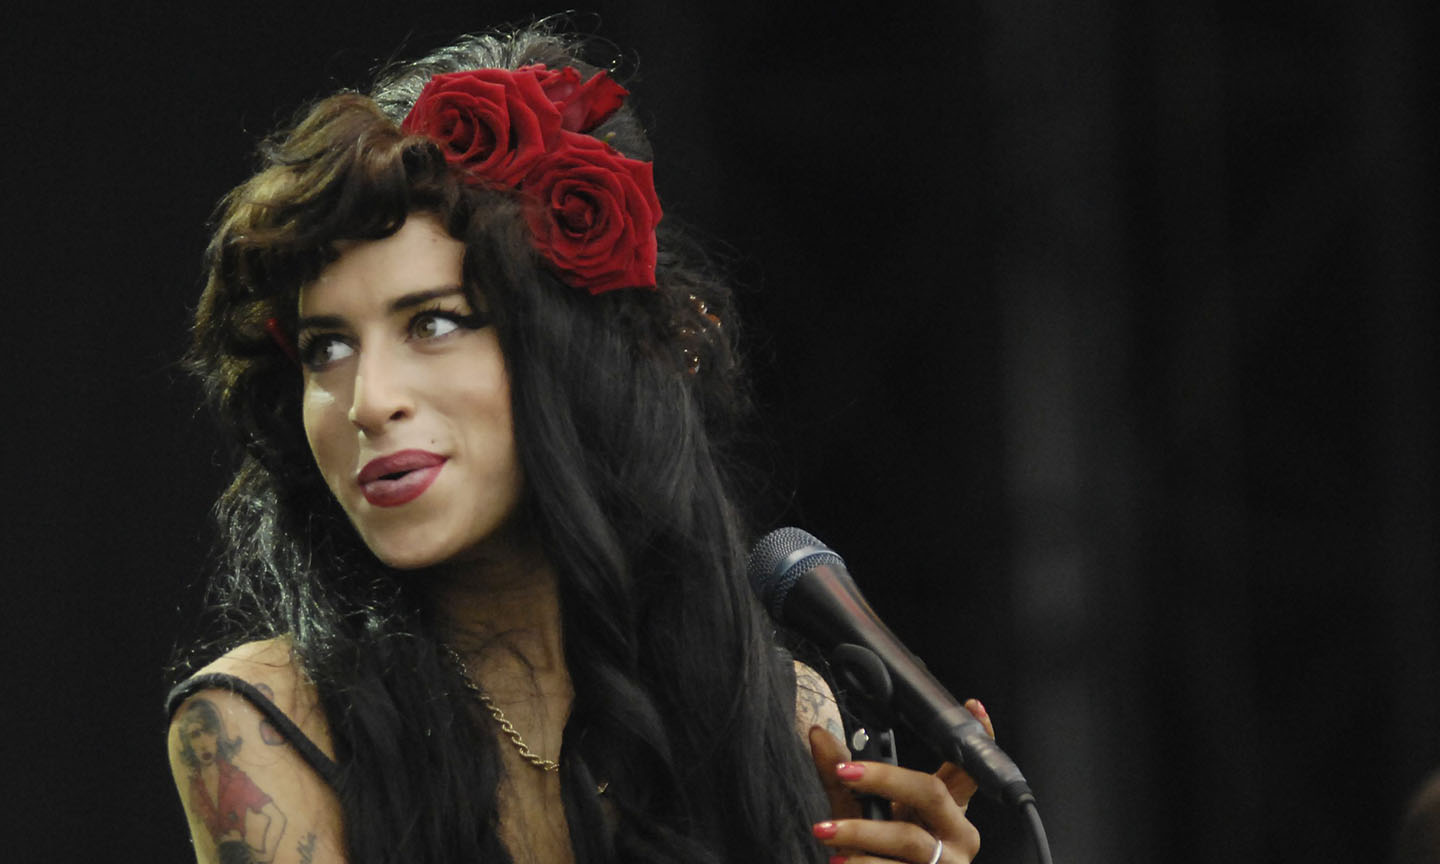 Nuevo vinilo de Amy Winehouse – KISS FM